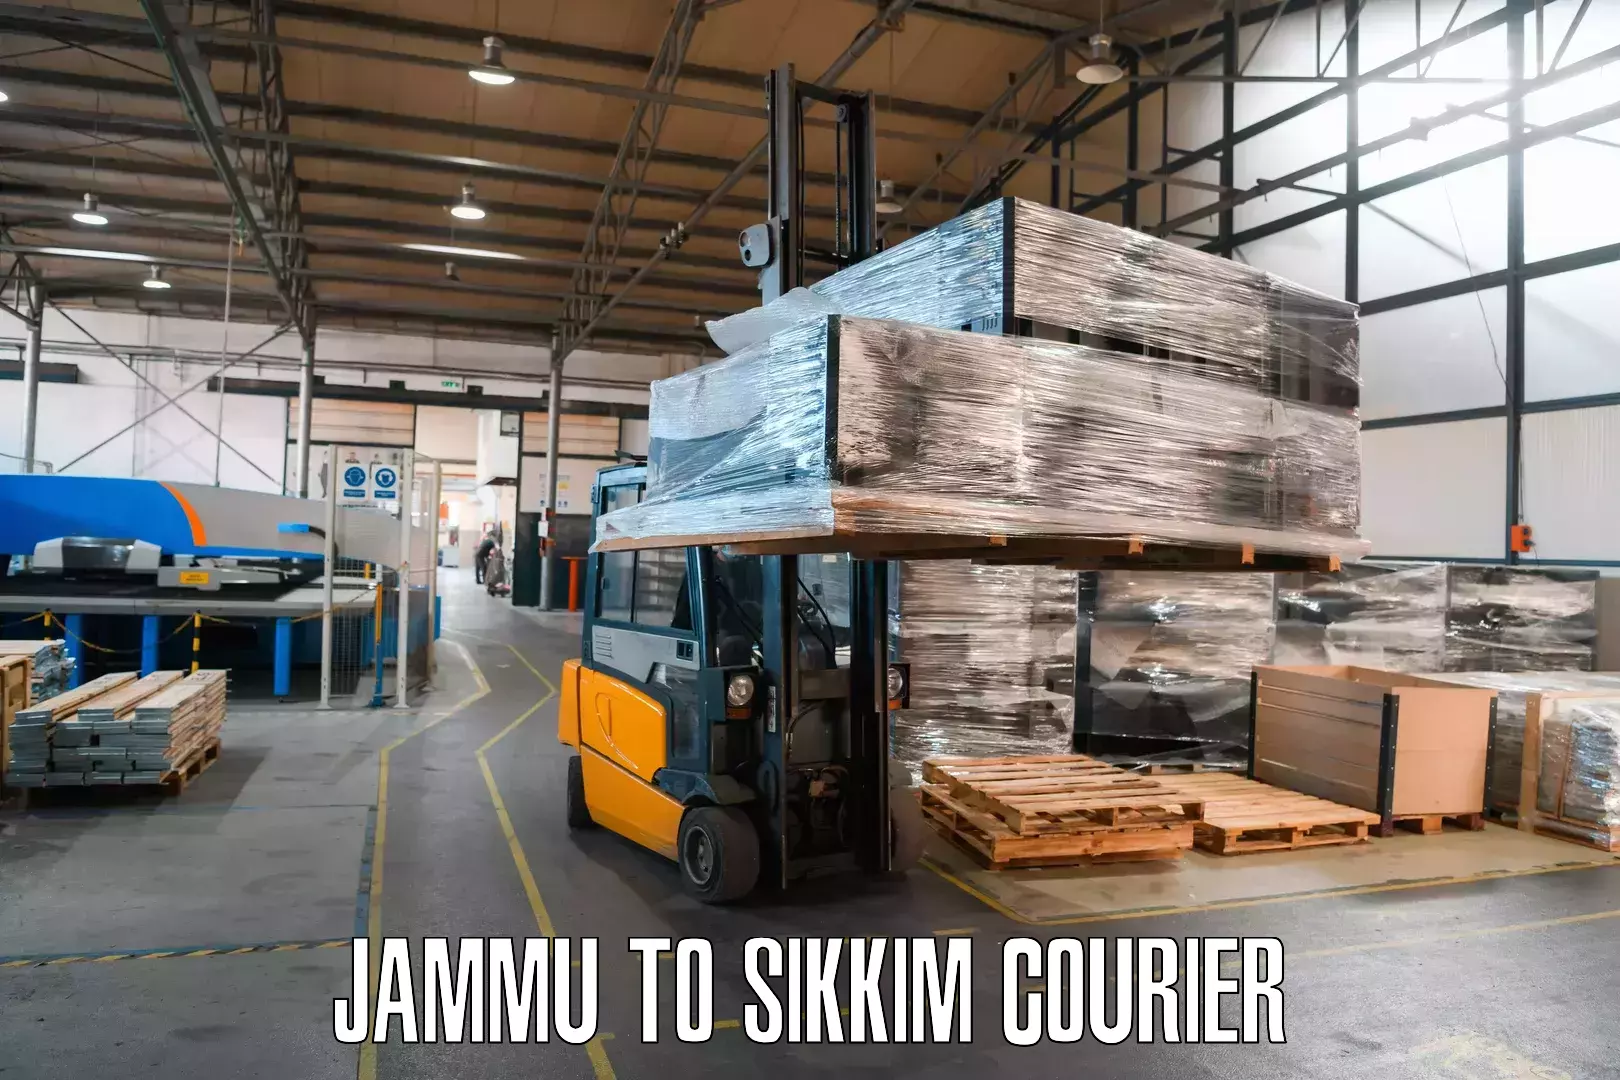 Doorstep delivery service Jammu to North Sikkim